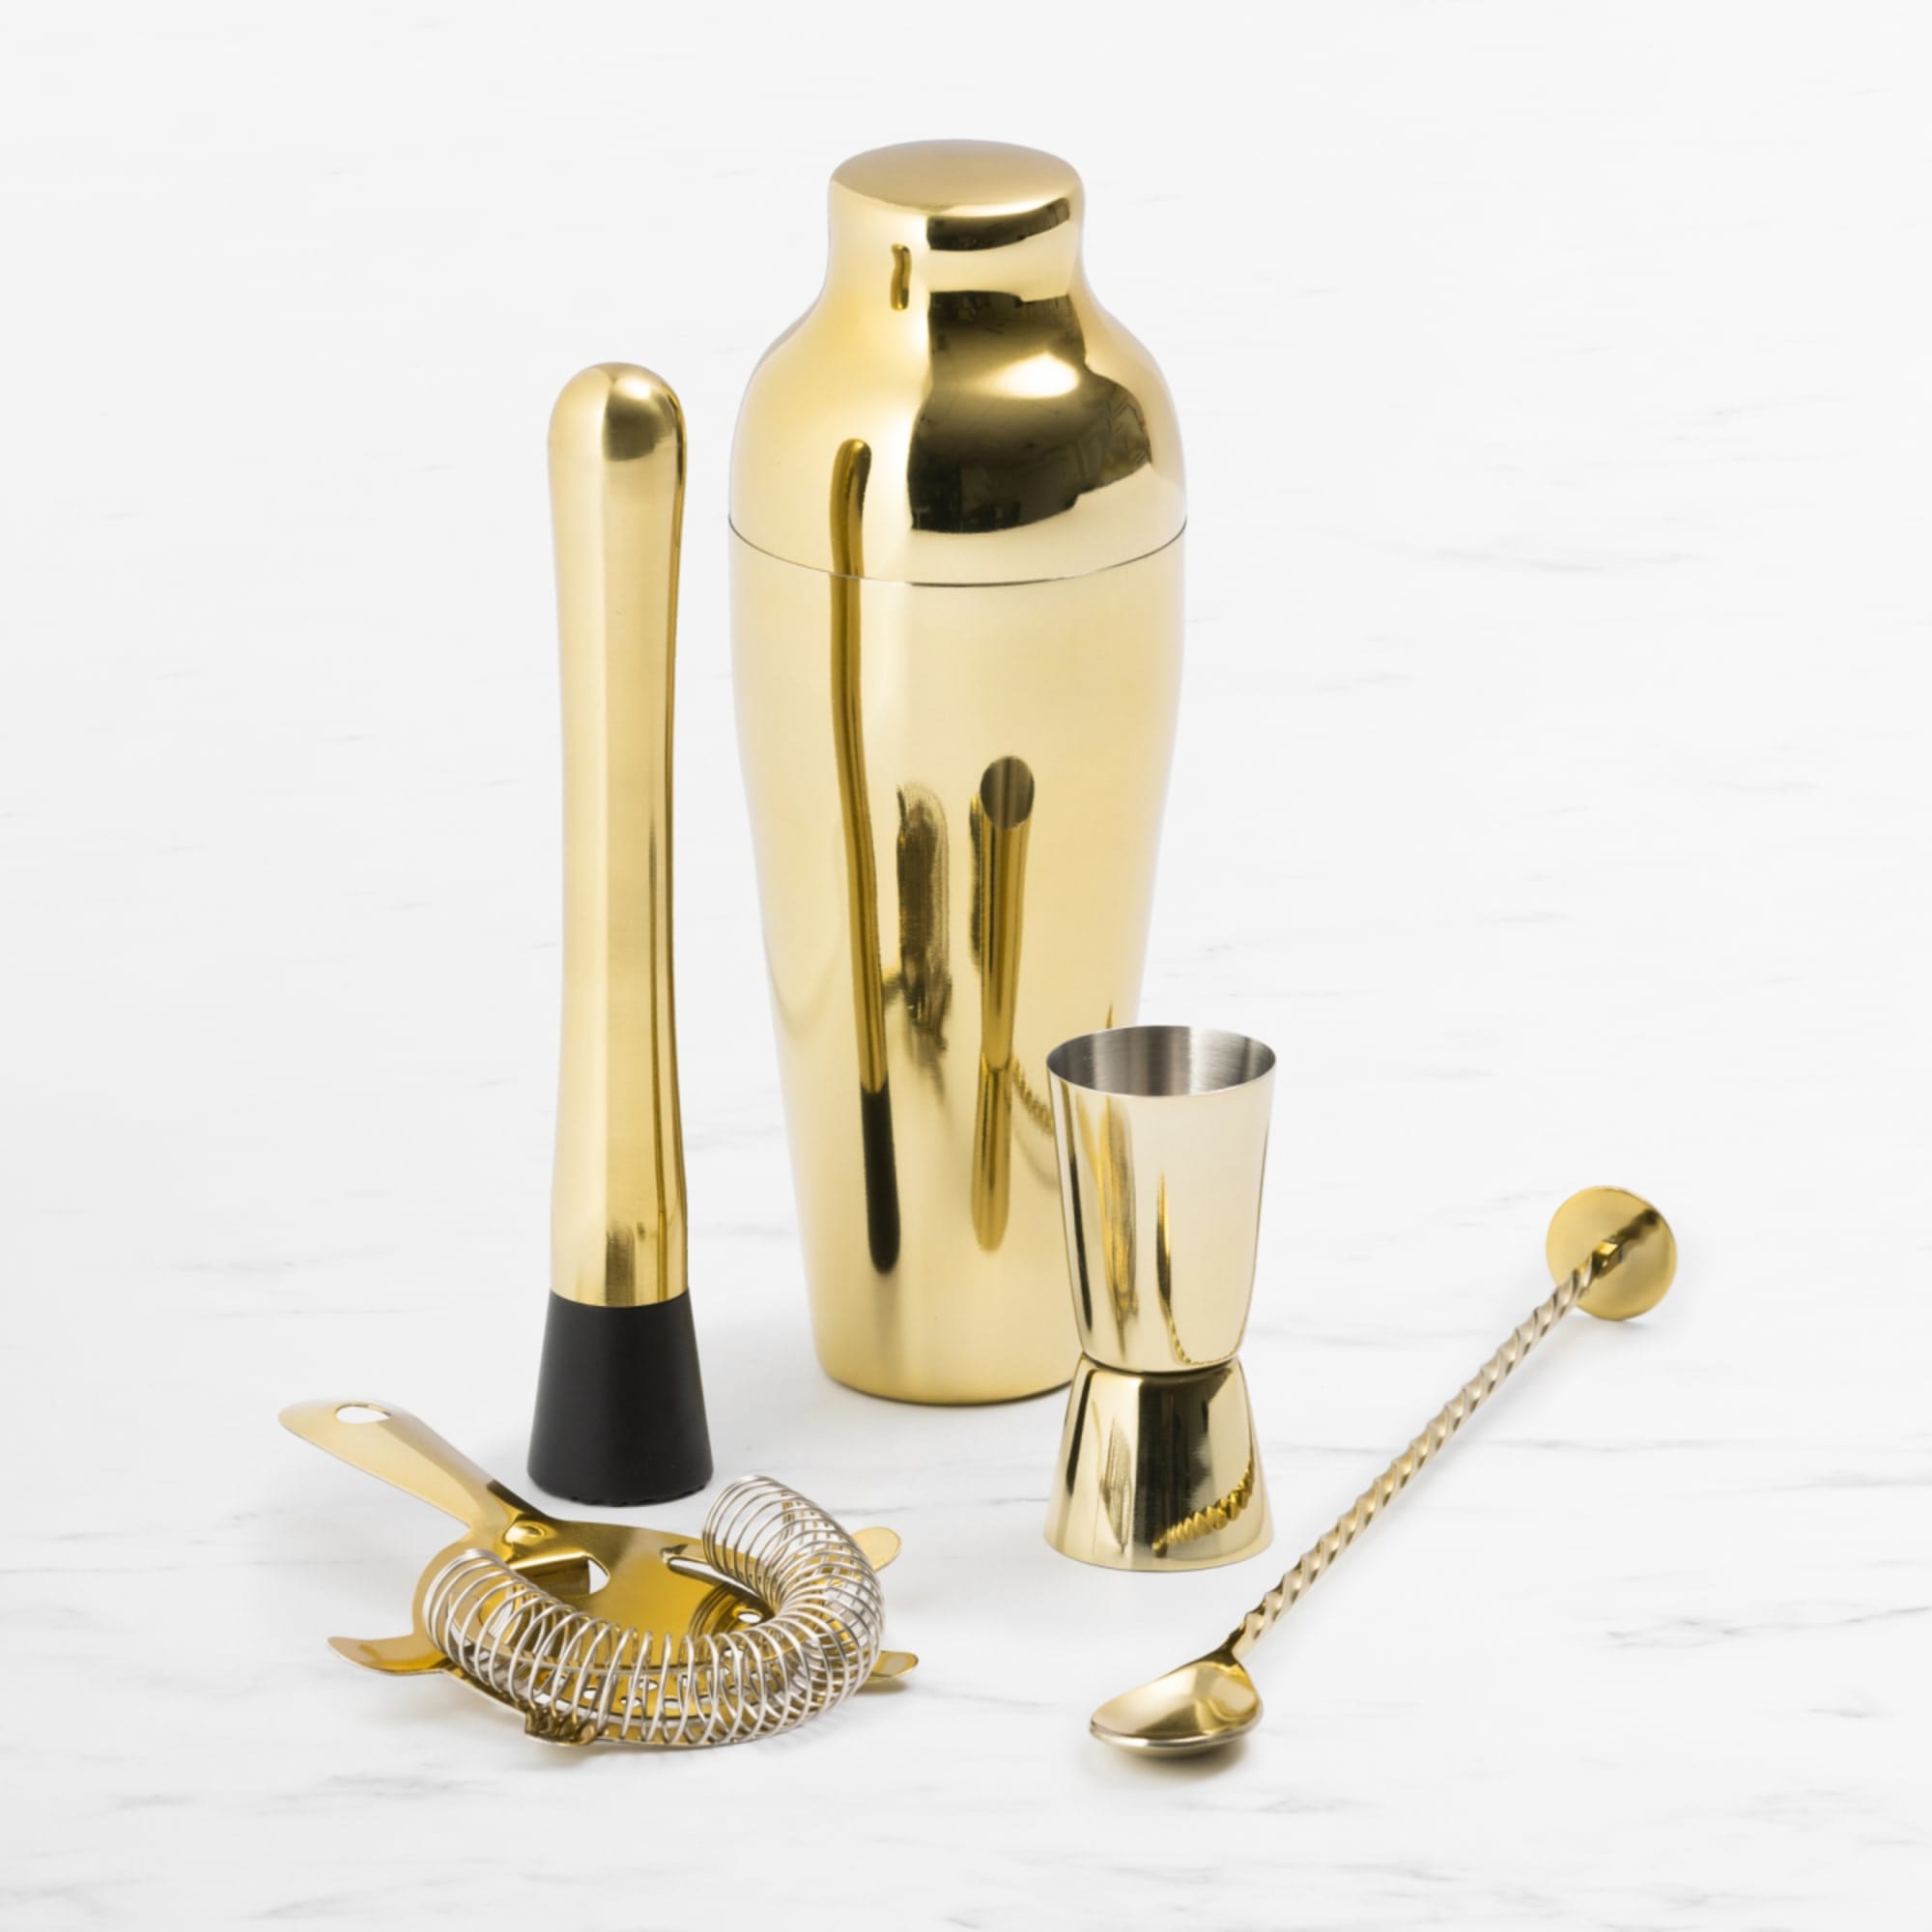 Pro Gold Cocktail Shaker Set